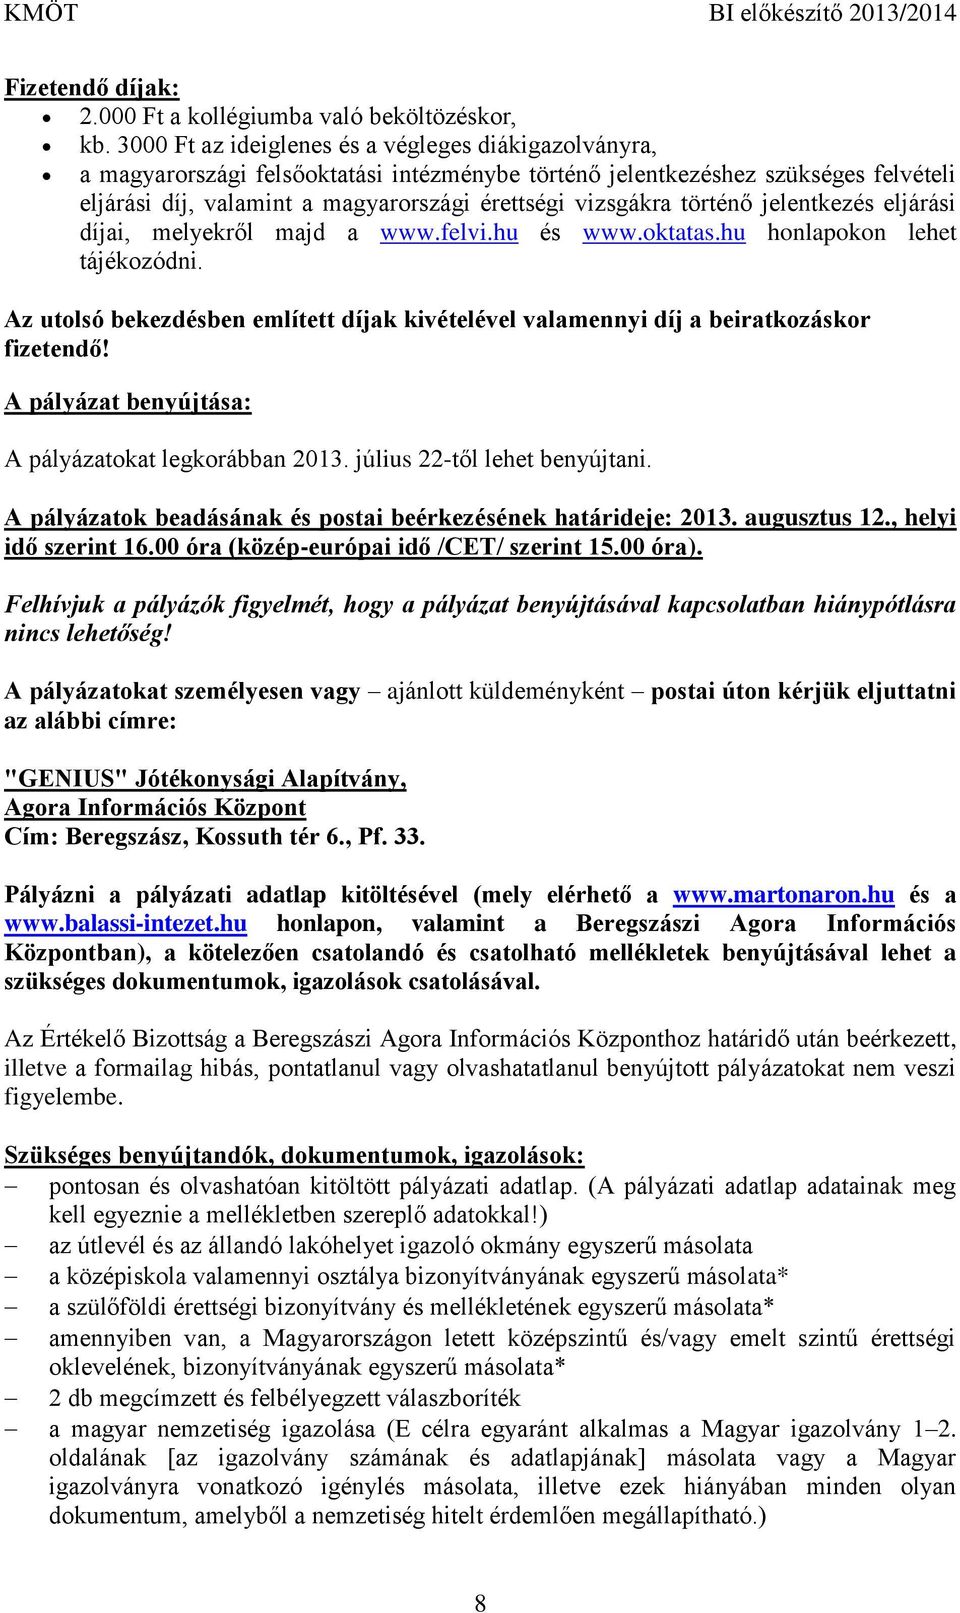 történő jelentkezés eljárási díjai, melyekről majd a www.felvi.hu és www.oktatas.hu honlapokon lehet tájékozódni.